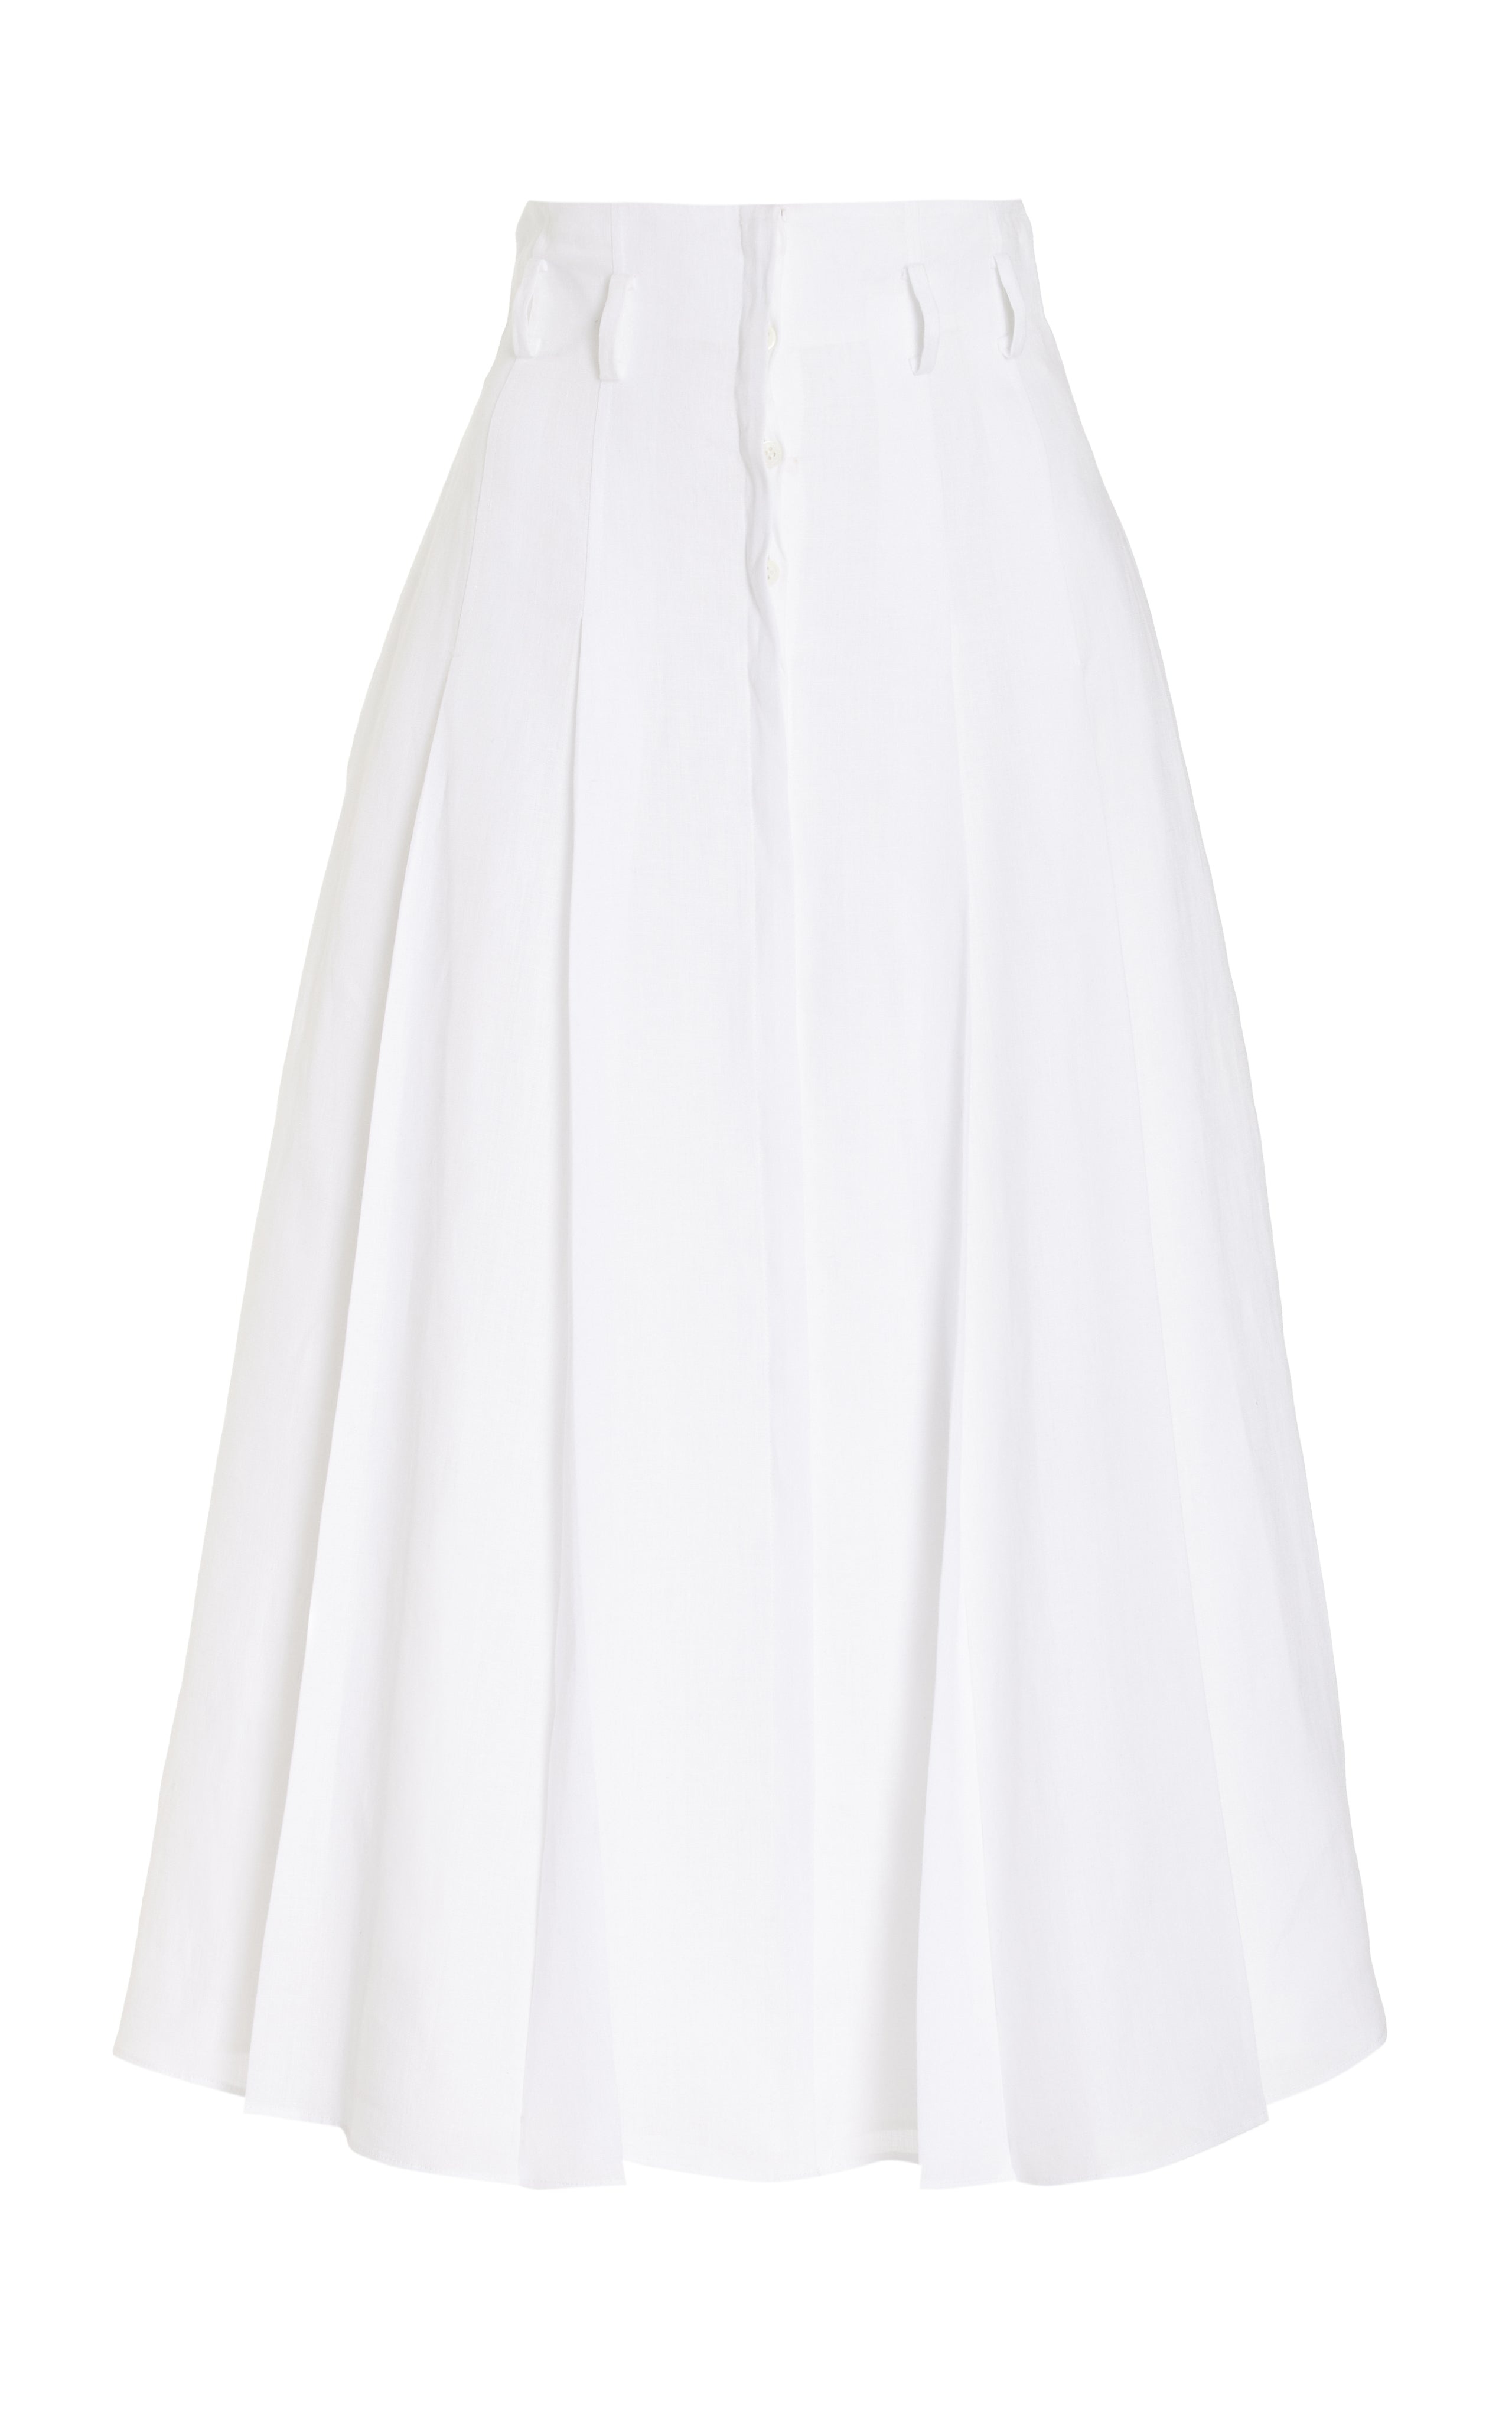 Dugald Pleated Skirt in White Aloe Linen - 1